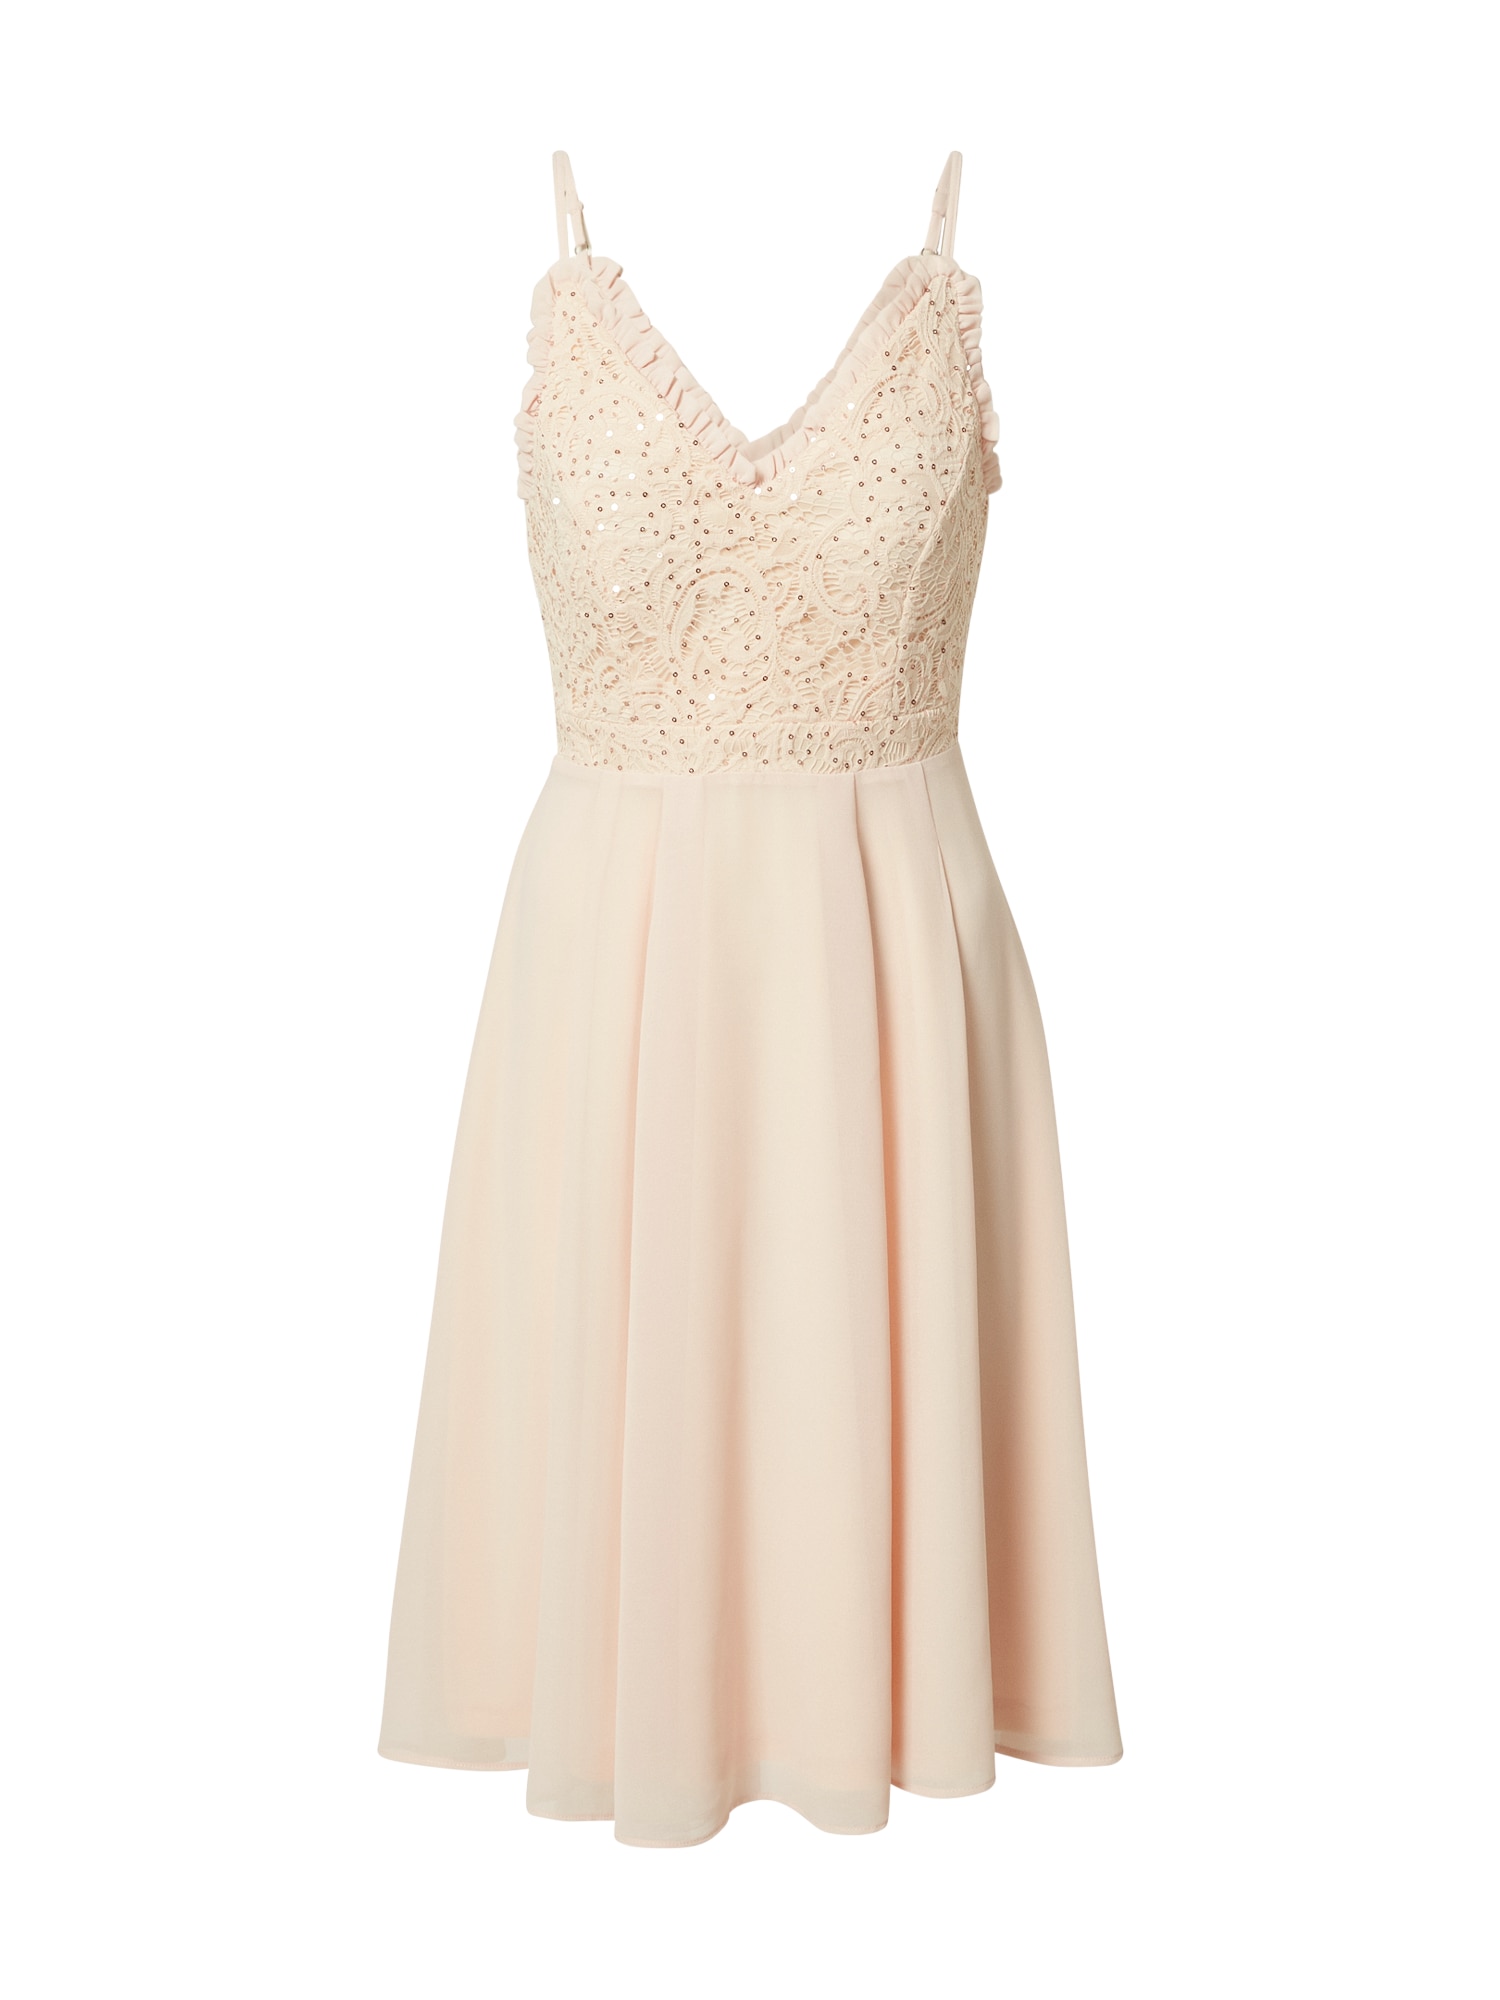 Skirt & Stiletto Kokteilinė suknelė ryškiai rožinė spalva